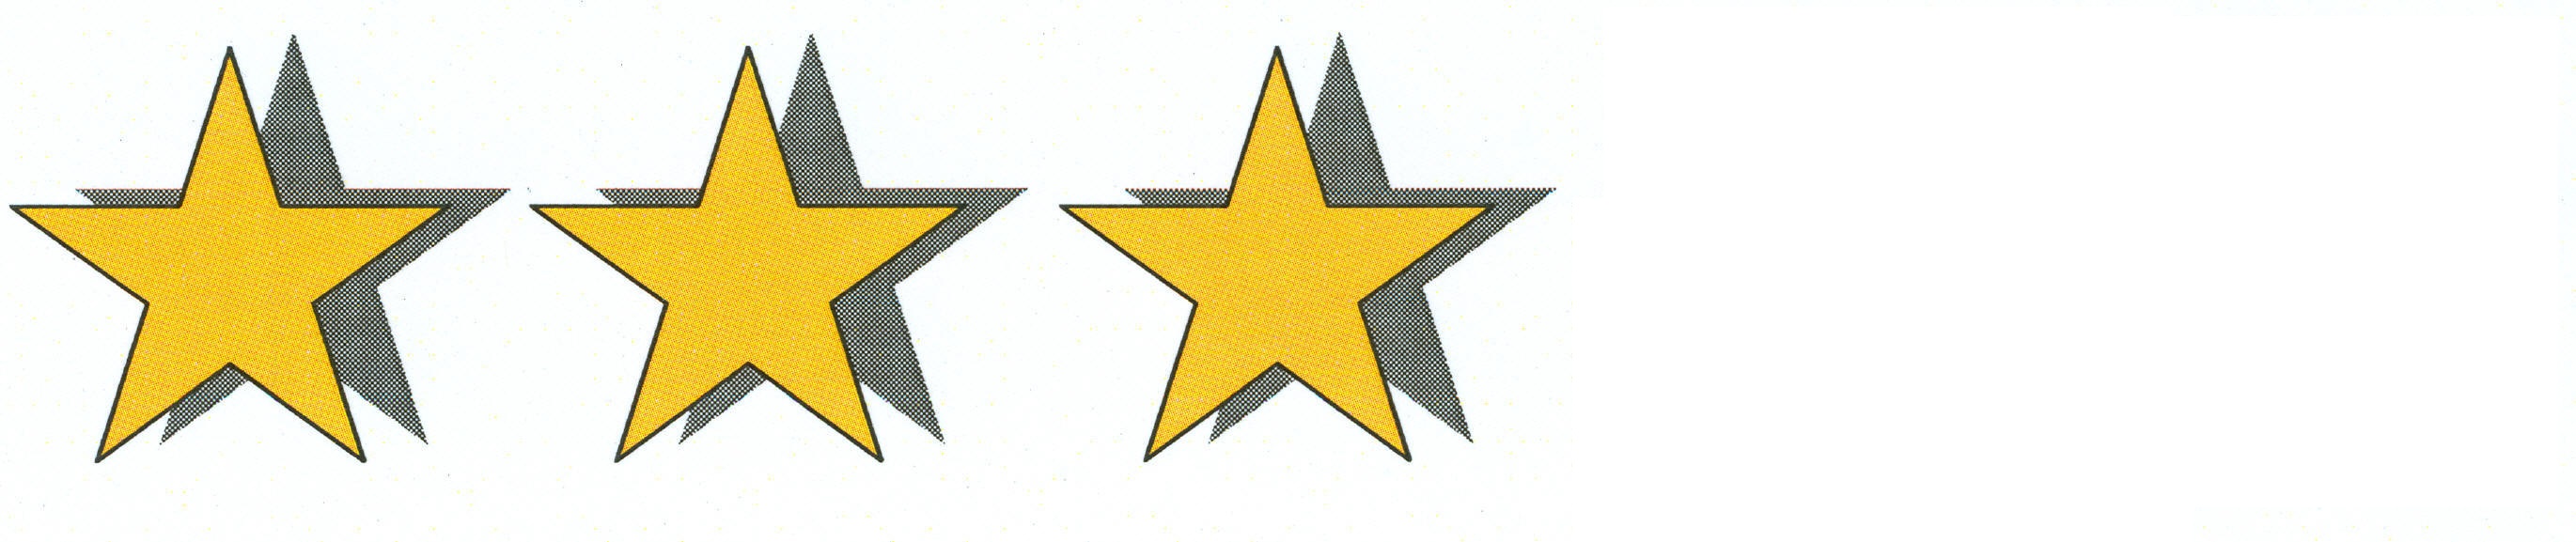 Imagini pentru trei stele